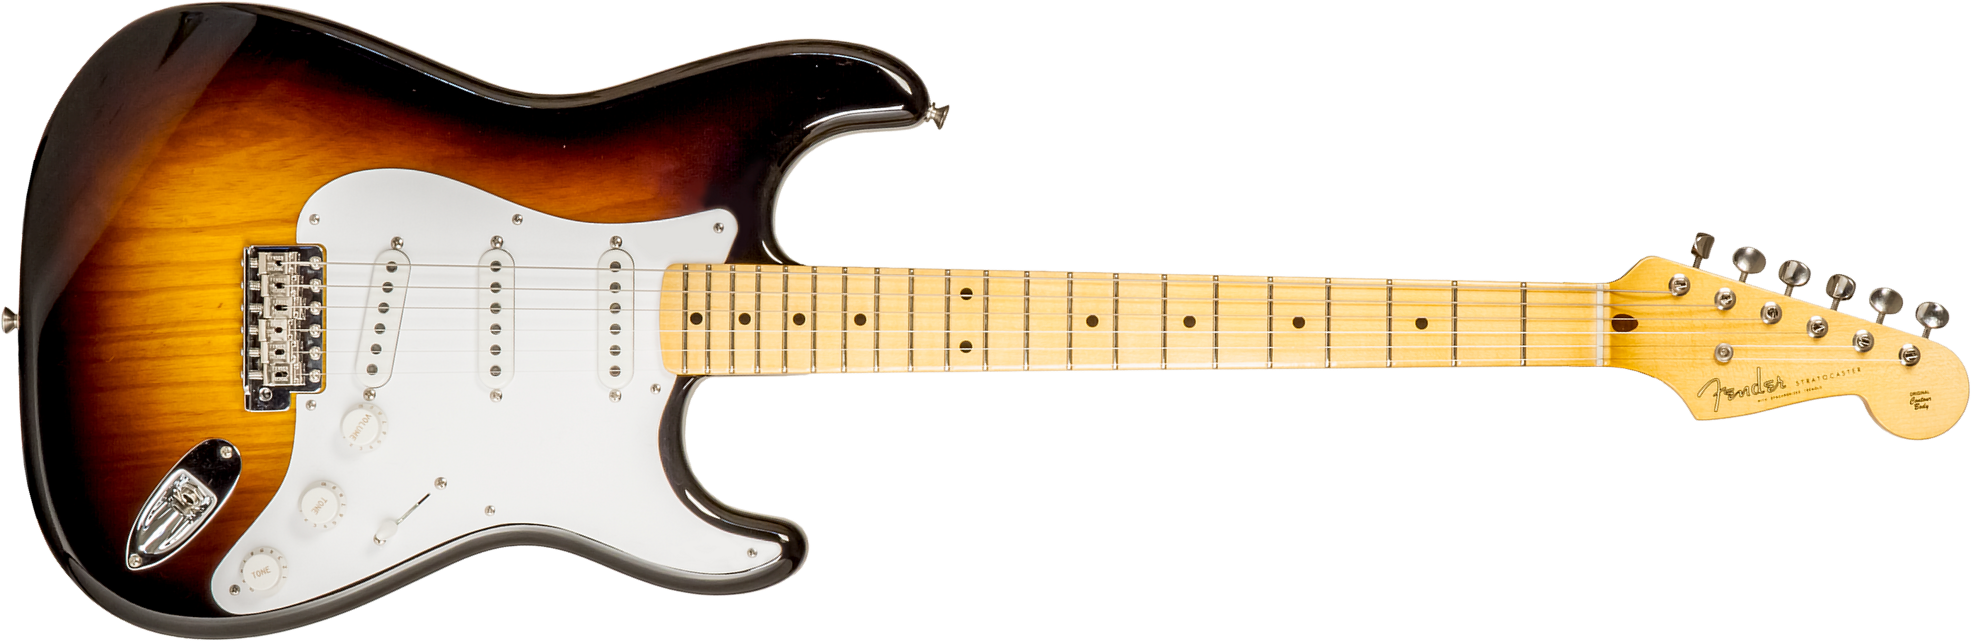 Fender Custom Shop Strat 1954 70th Anniv. #xn4597 3s Trem Mn - Time Capsule 2-color Sunburst - Guitare Électrique Forme Str - Main picture